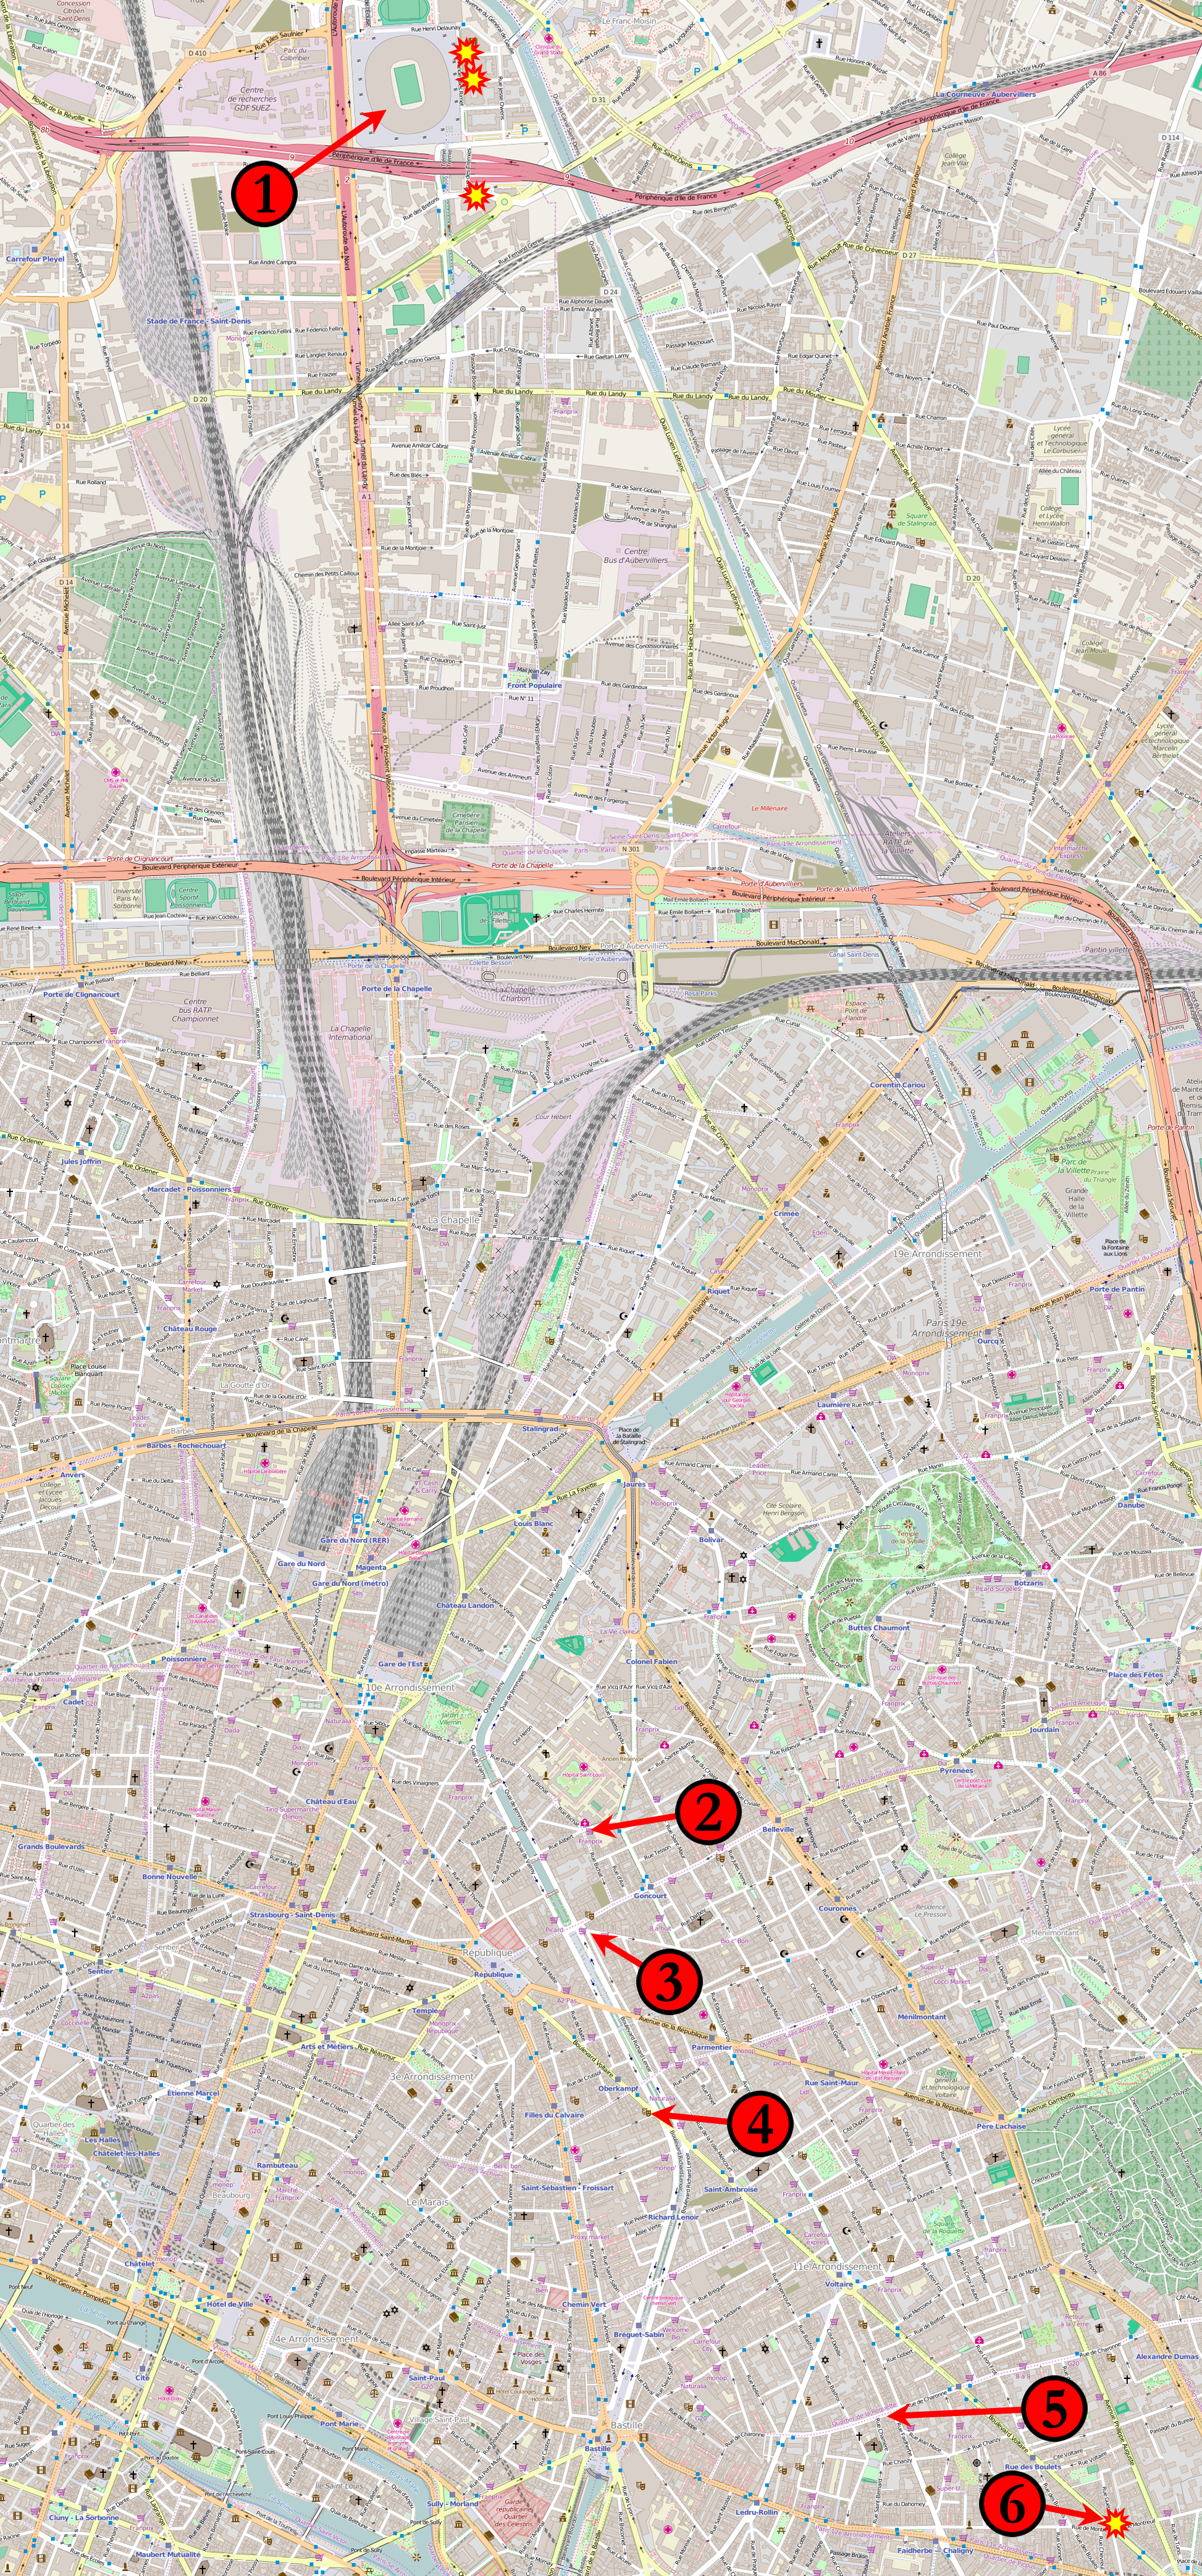 パリ同時多発テロ事件 Wikipedia